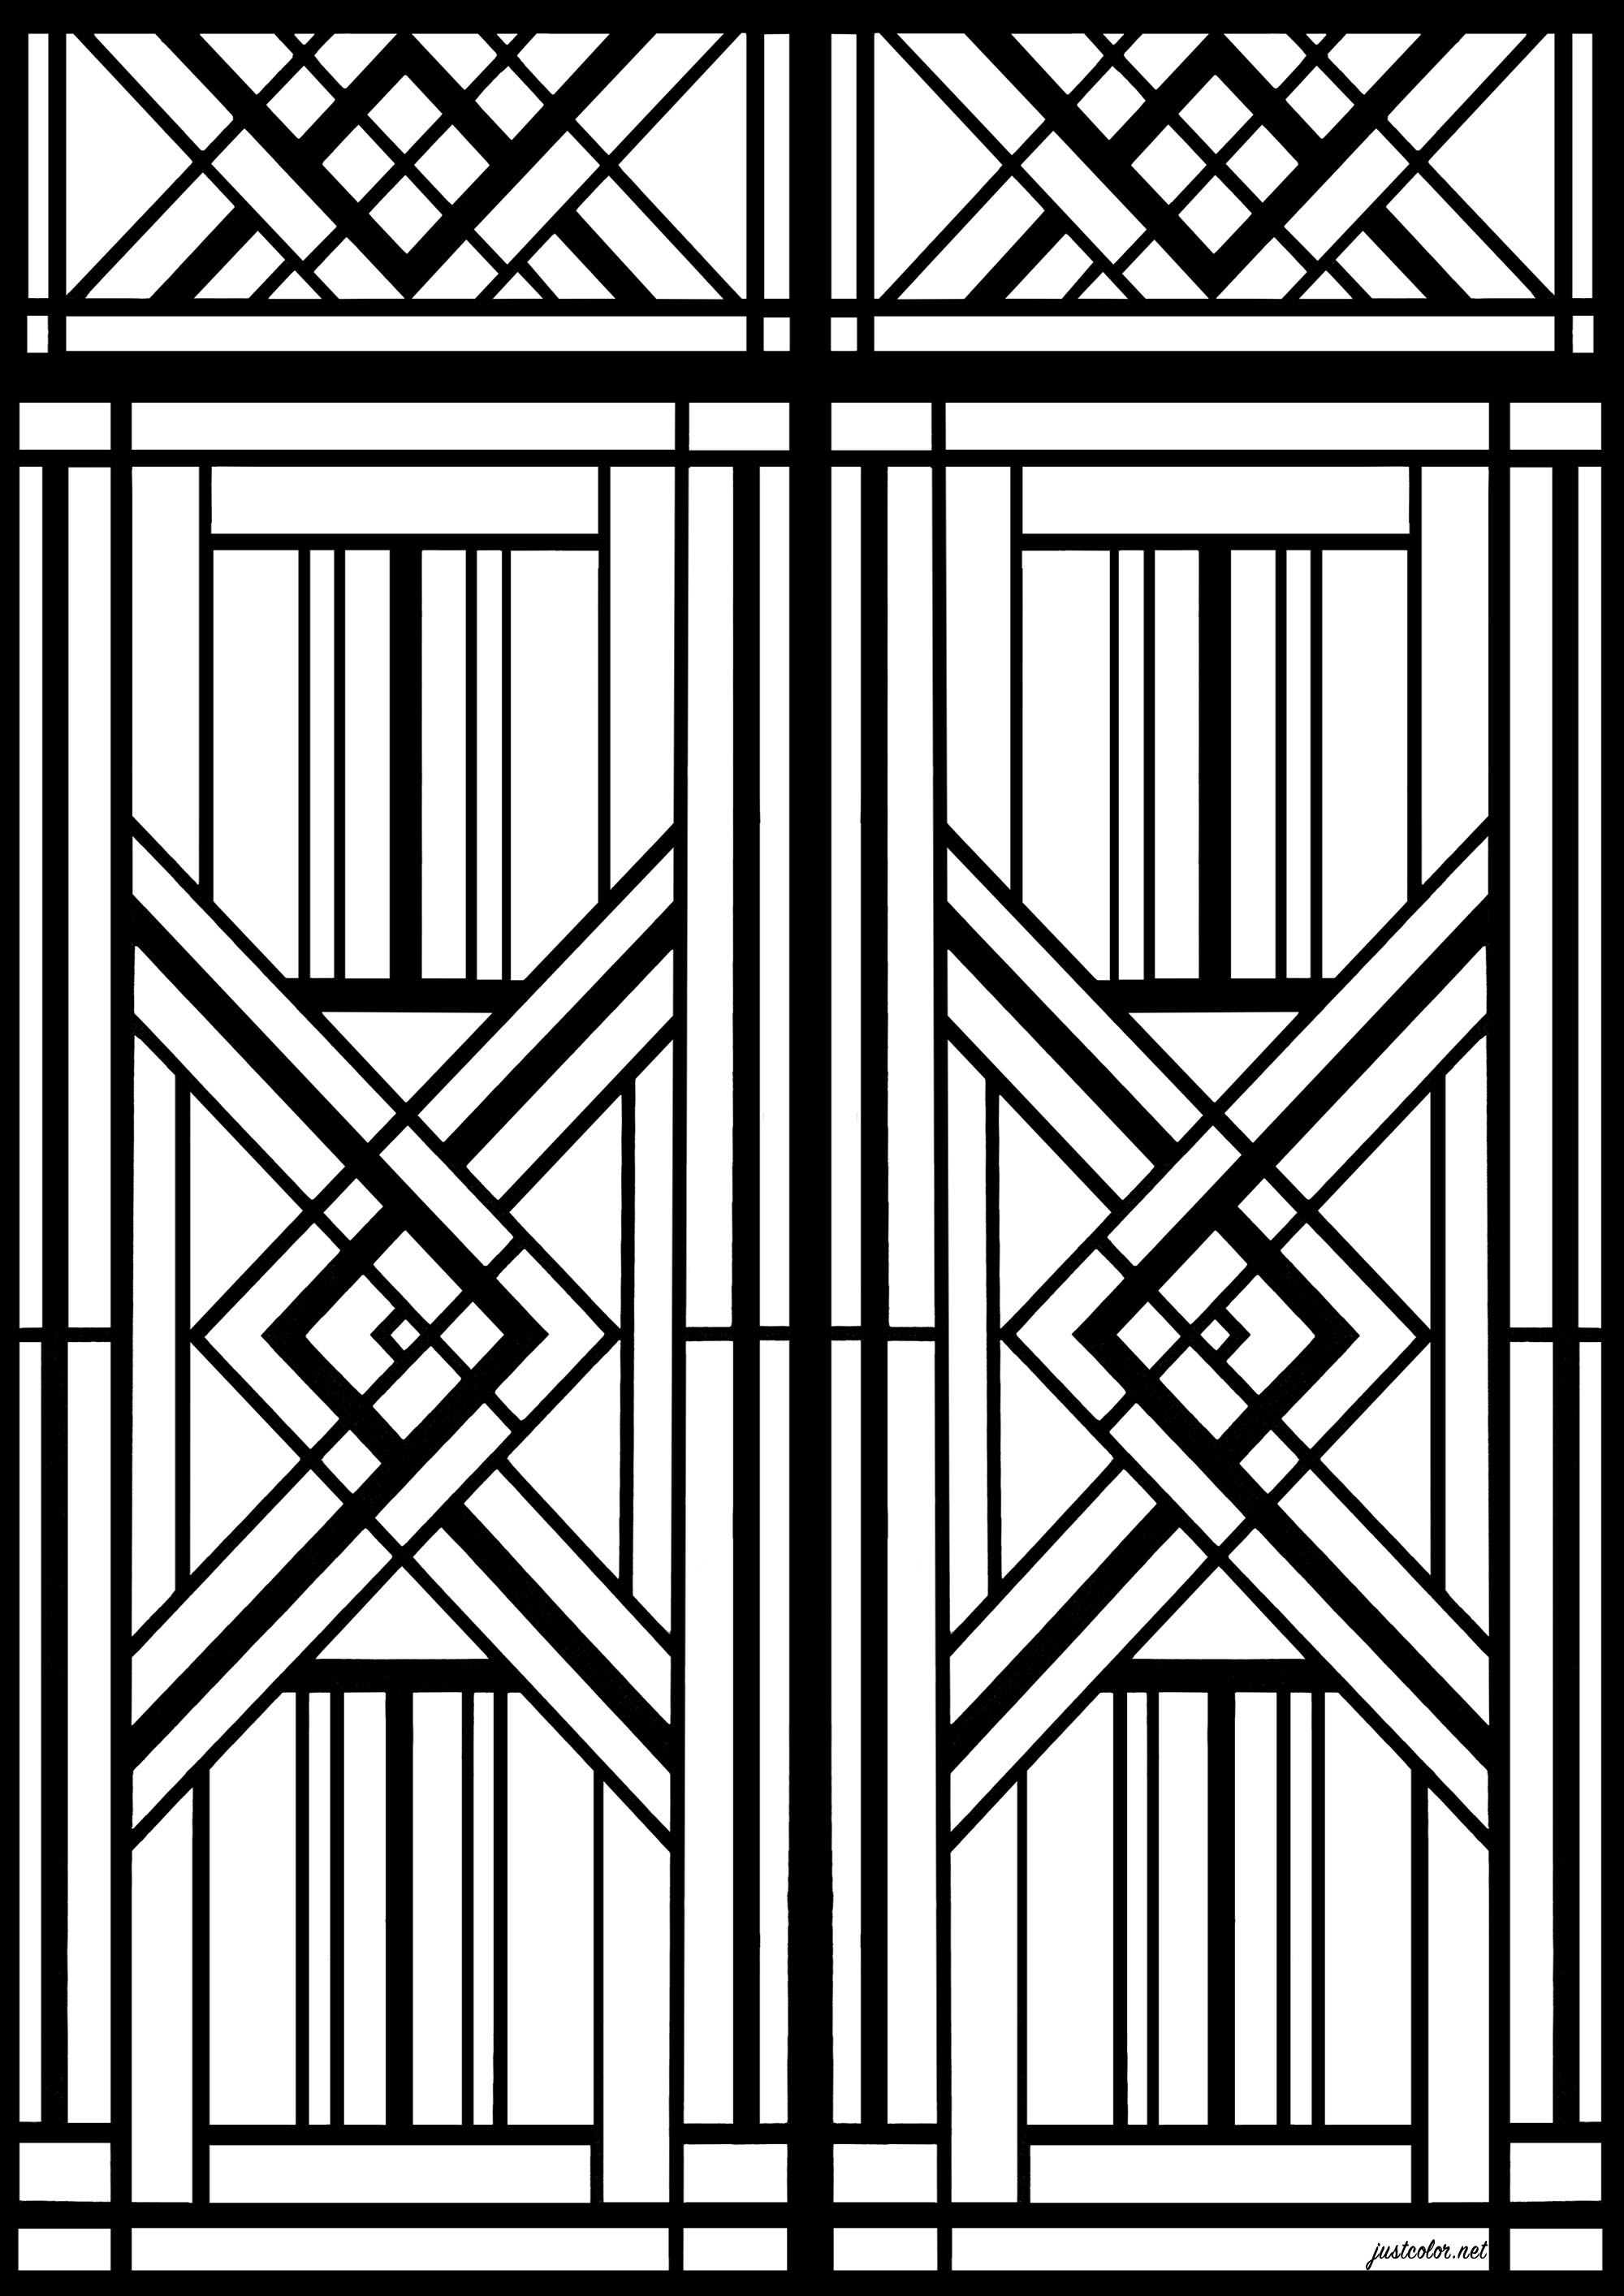 L'Art Déco vista a Parigi. Le porte Art Déco di Parigi sono esempi straordinari dell'architettura Art Déco, fiorita in città negli anni Venti e Trenta. Caratterizzate da elaborati motivi geometrici, sono un esempio di come l'architettura possa essere utilizzata per creare un senso di eleganza e raffinatezza.